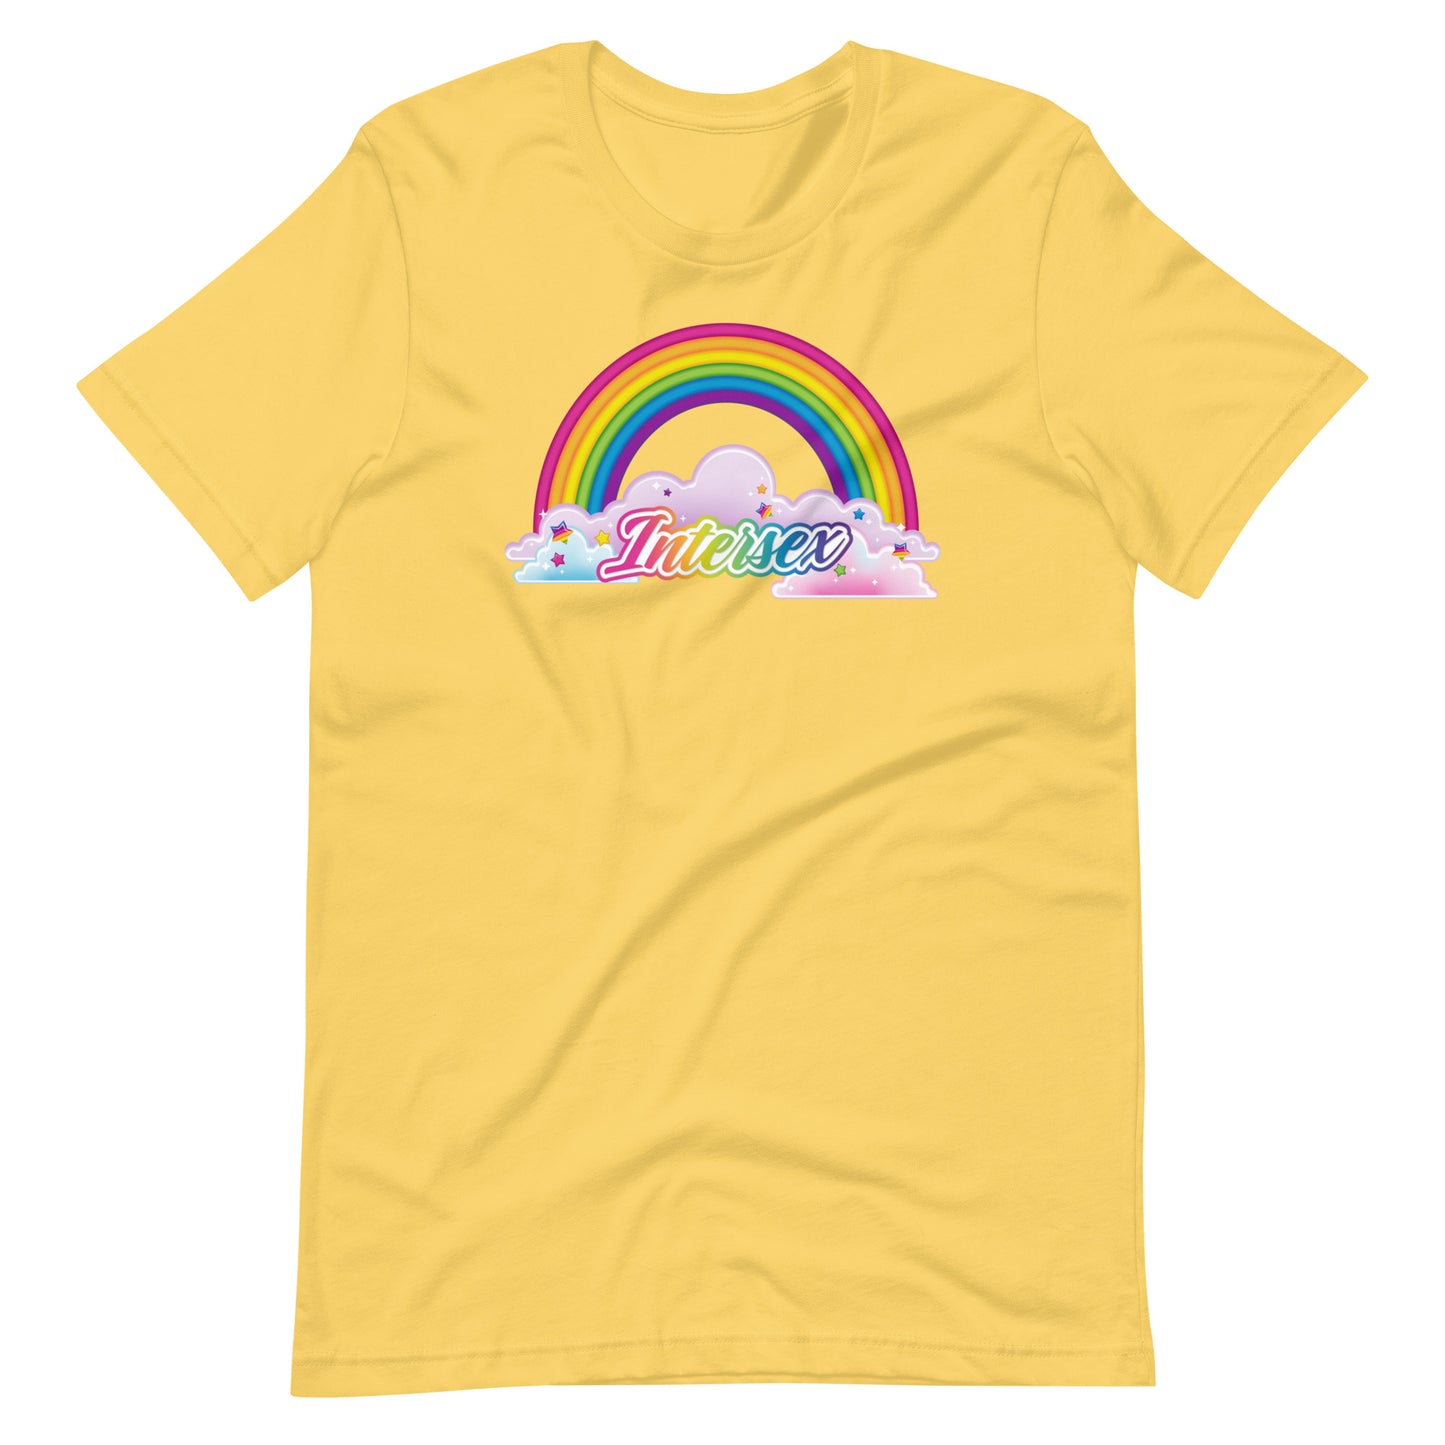 LGBTQIA Frank T-Shirt: Intersex